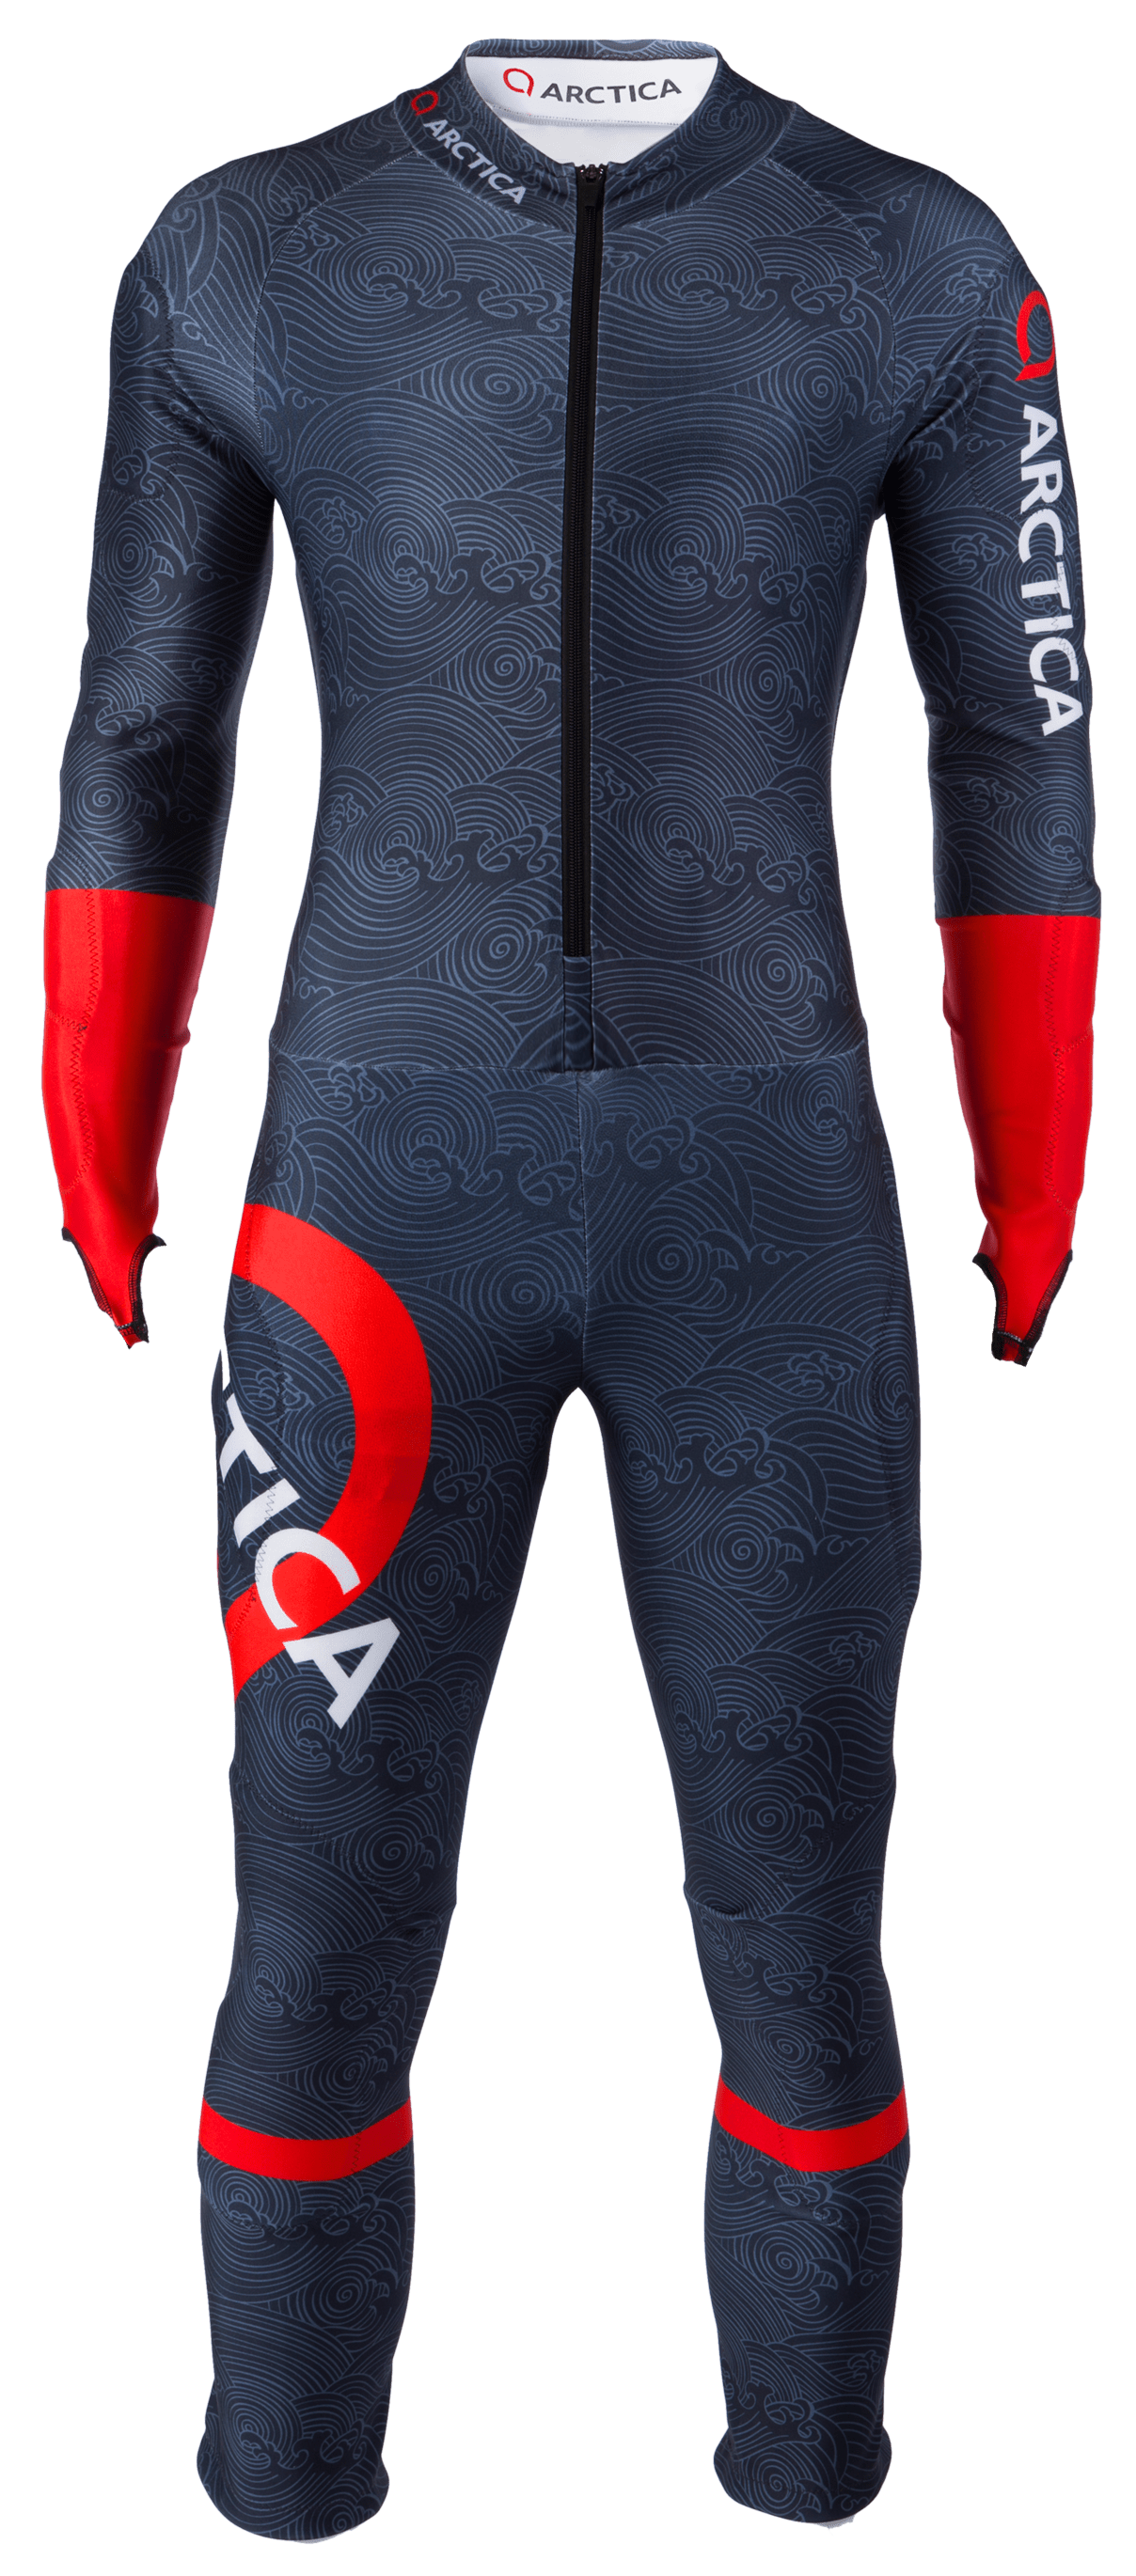 Arctica Tsunami Junior GS Speed Suit